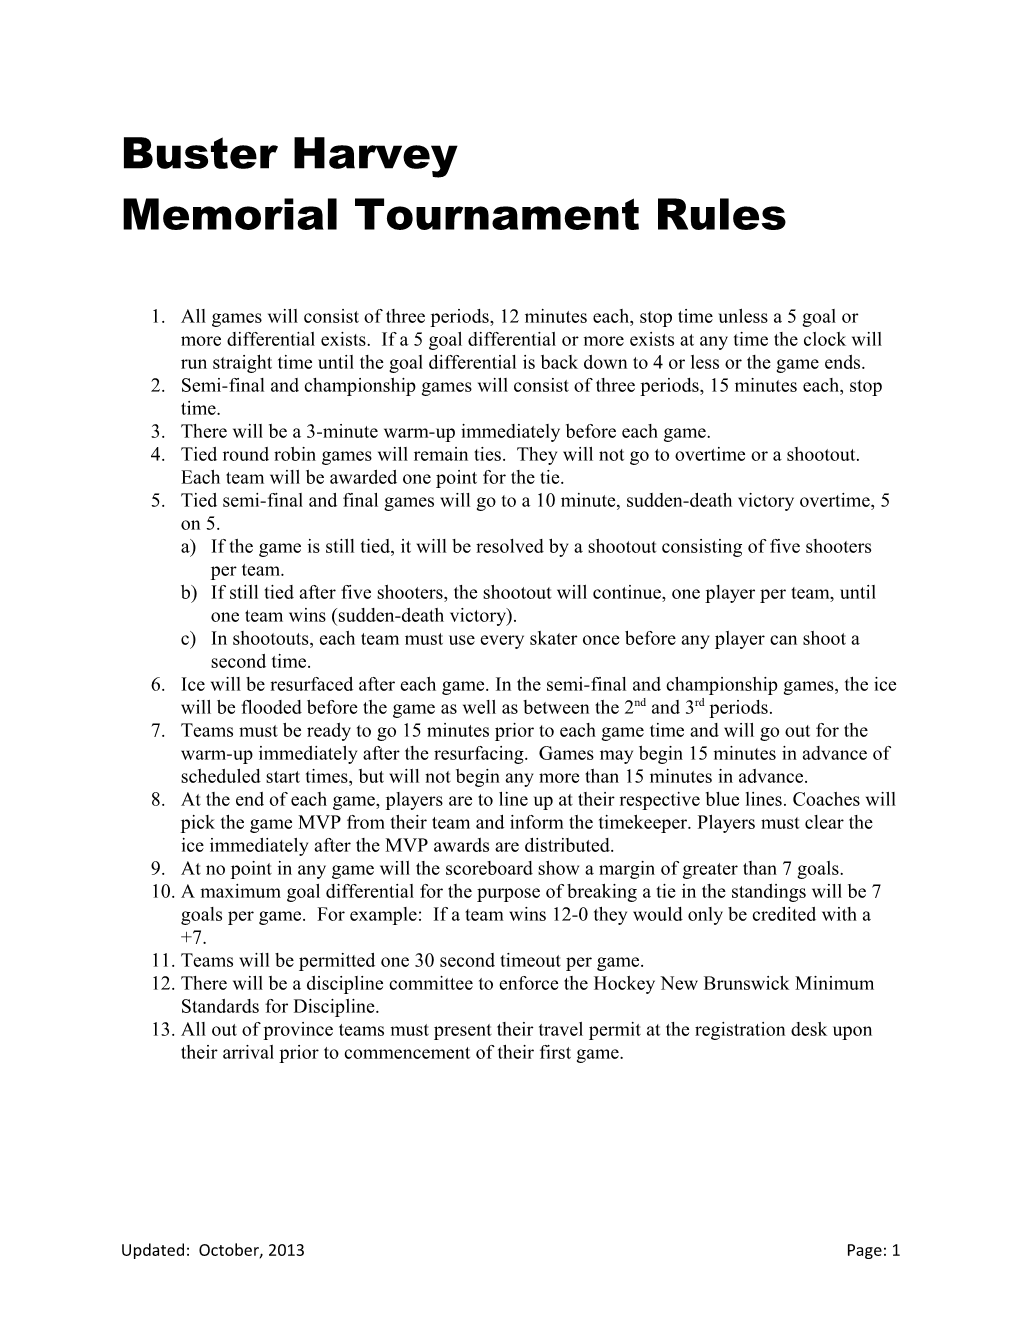 Memorial Tournament Rules